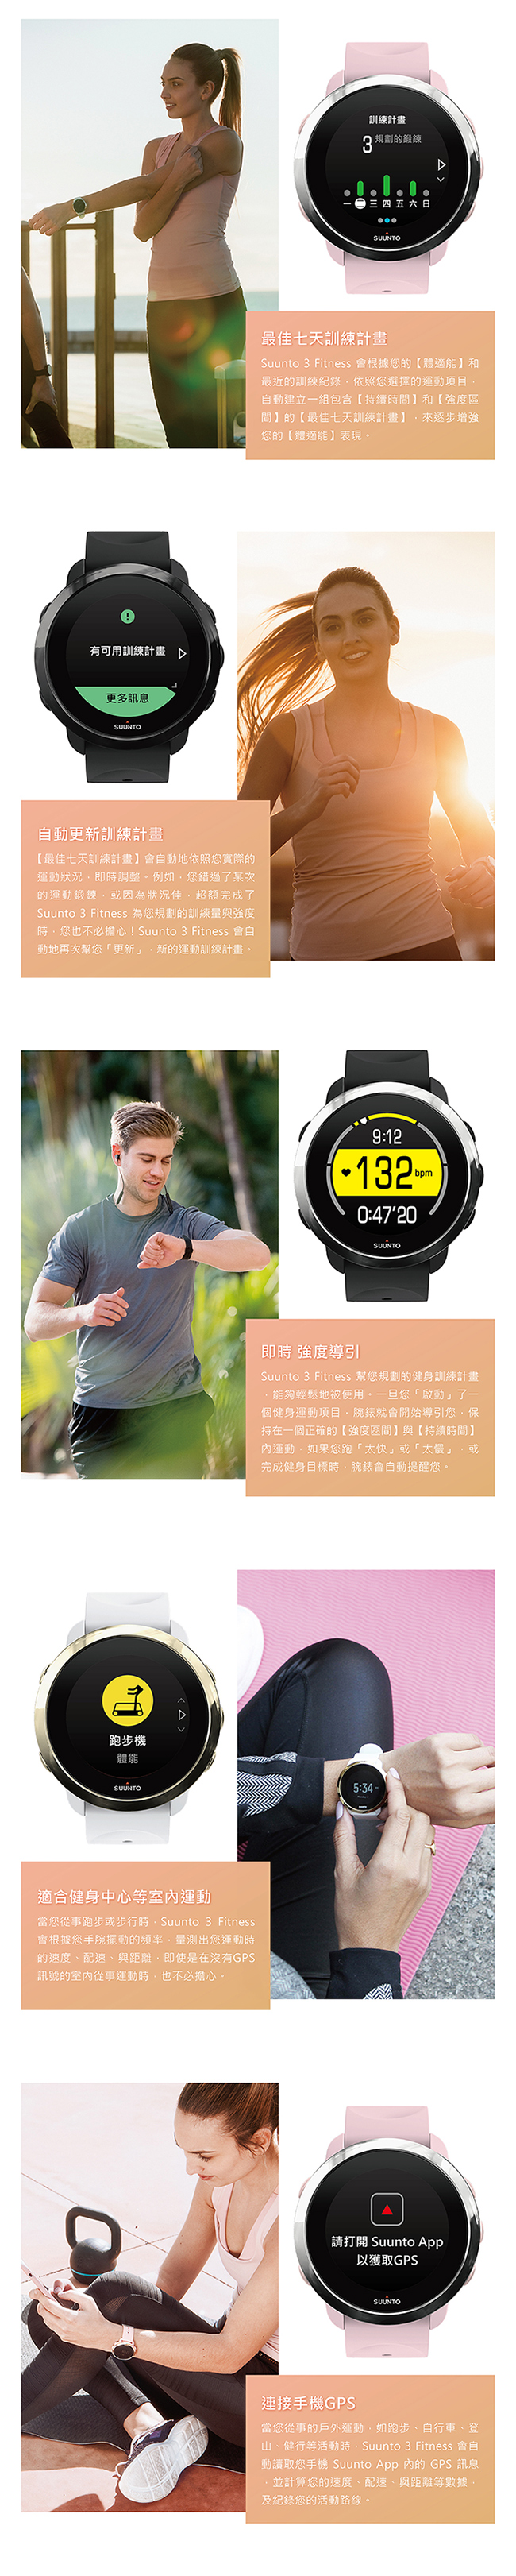 SUUNTO 3 Fitness 保持健康與活力生活的體適能運動腕錶 (全黑)